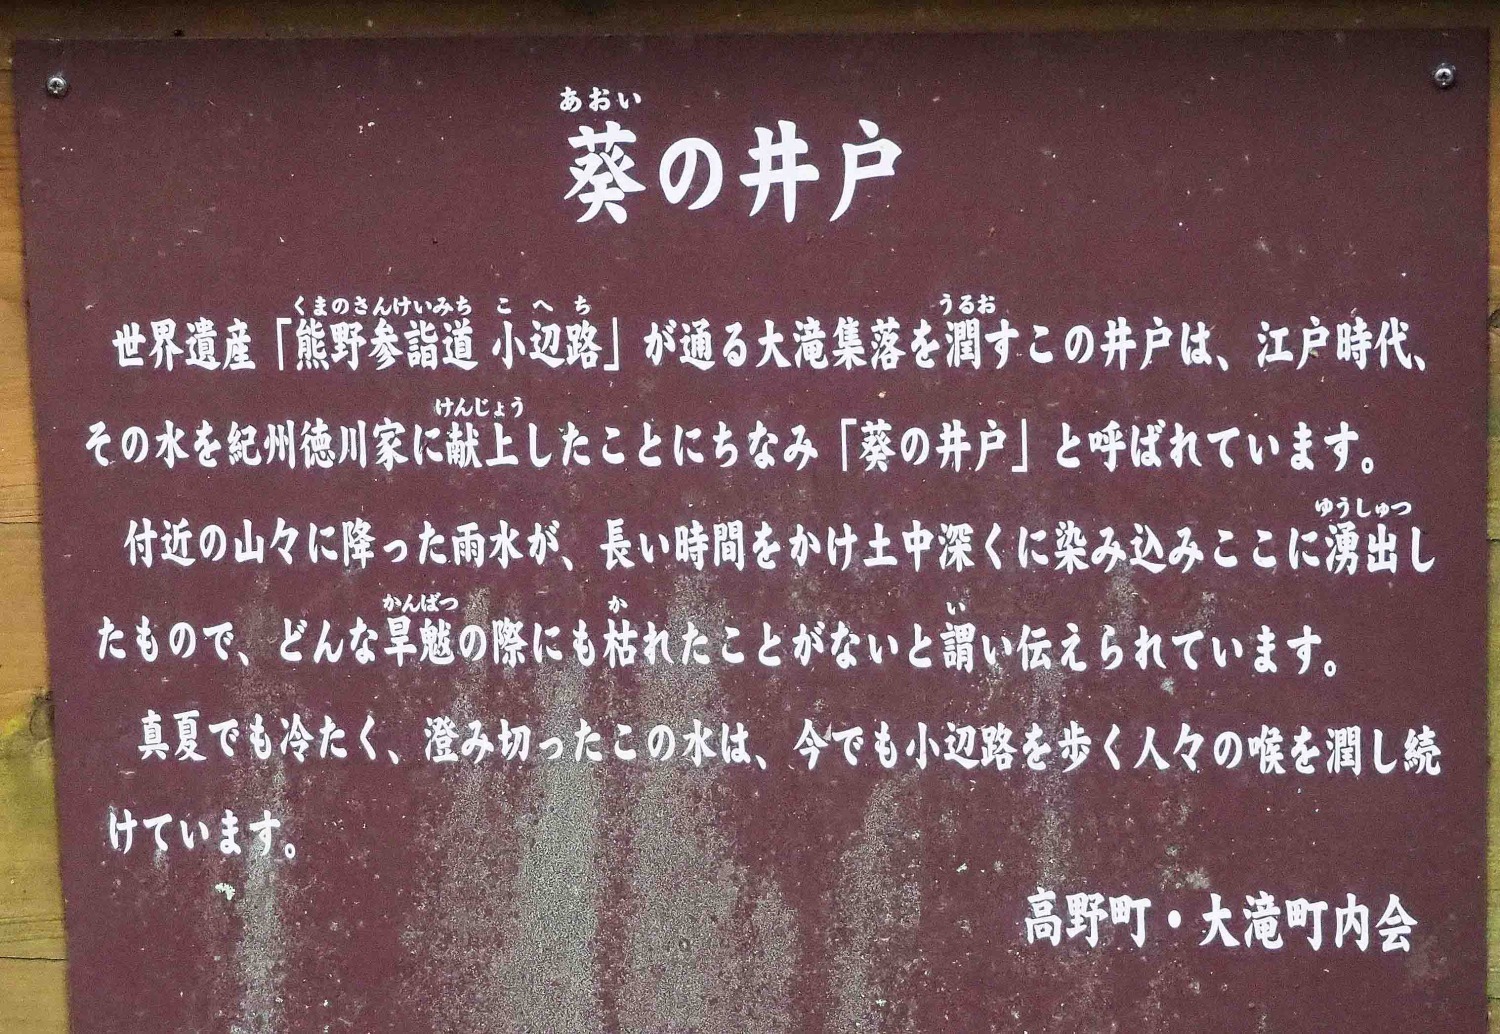 説明書。ちなみに、献上先の和歌山城まで約60km、現代の整備された歩道を歩いて徒歩で約12時間・・・